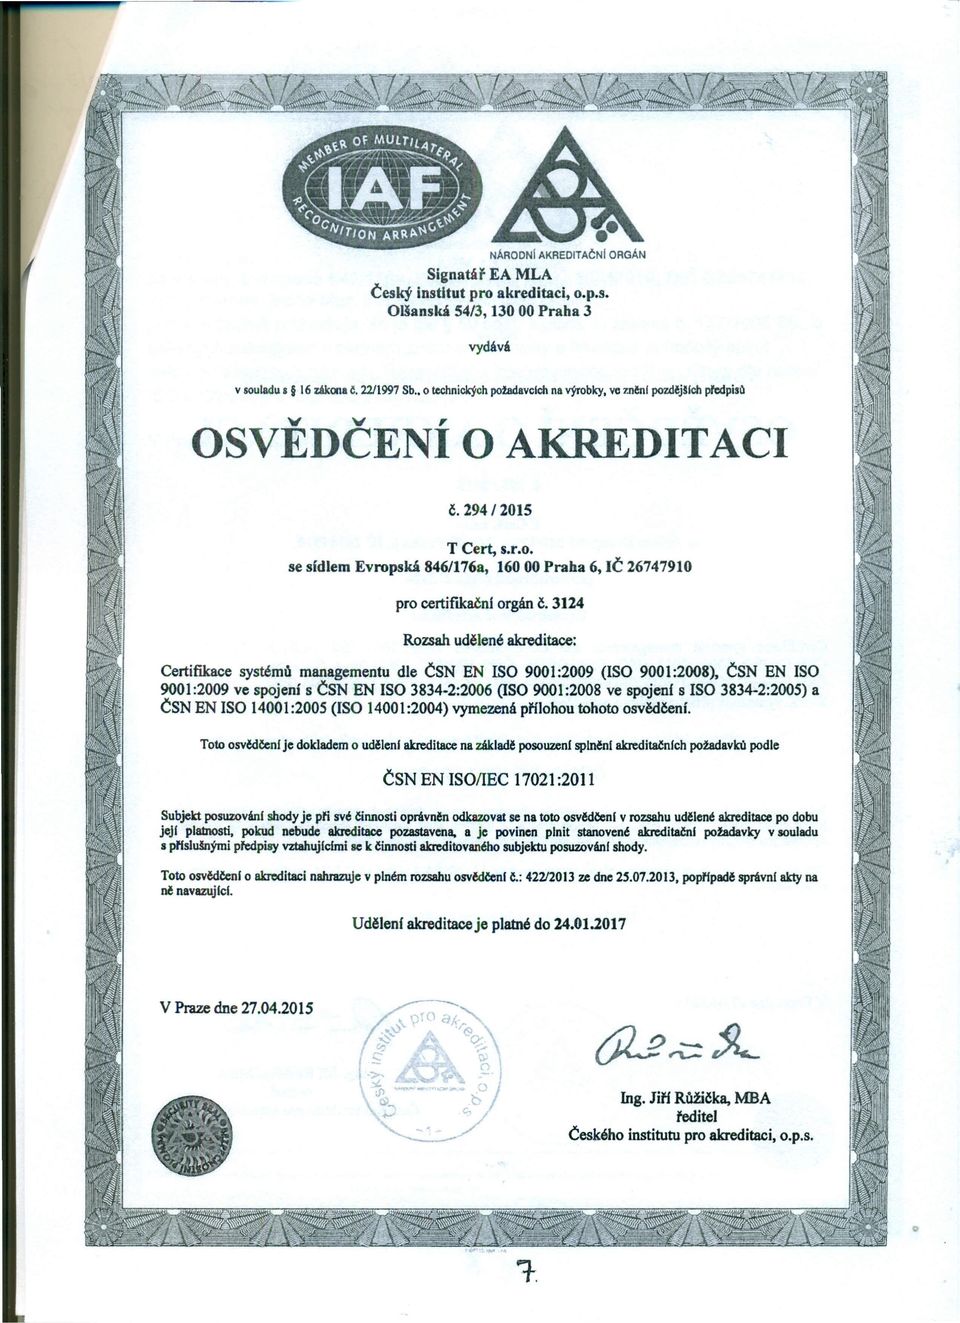 3124 Rozsah udělené akreditace: Certifikace systémů managementu dle ČSN EN ISO 9001:2009 (ISO 9001:2008), ČSN EN ISO 9001:2009 ve spojení s ČSN EN ISO 3834-2:2006 (ISO 9001:2008 ve spojeni s ISO